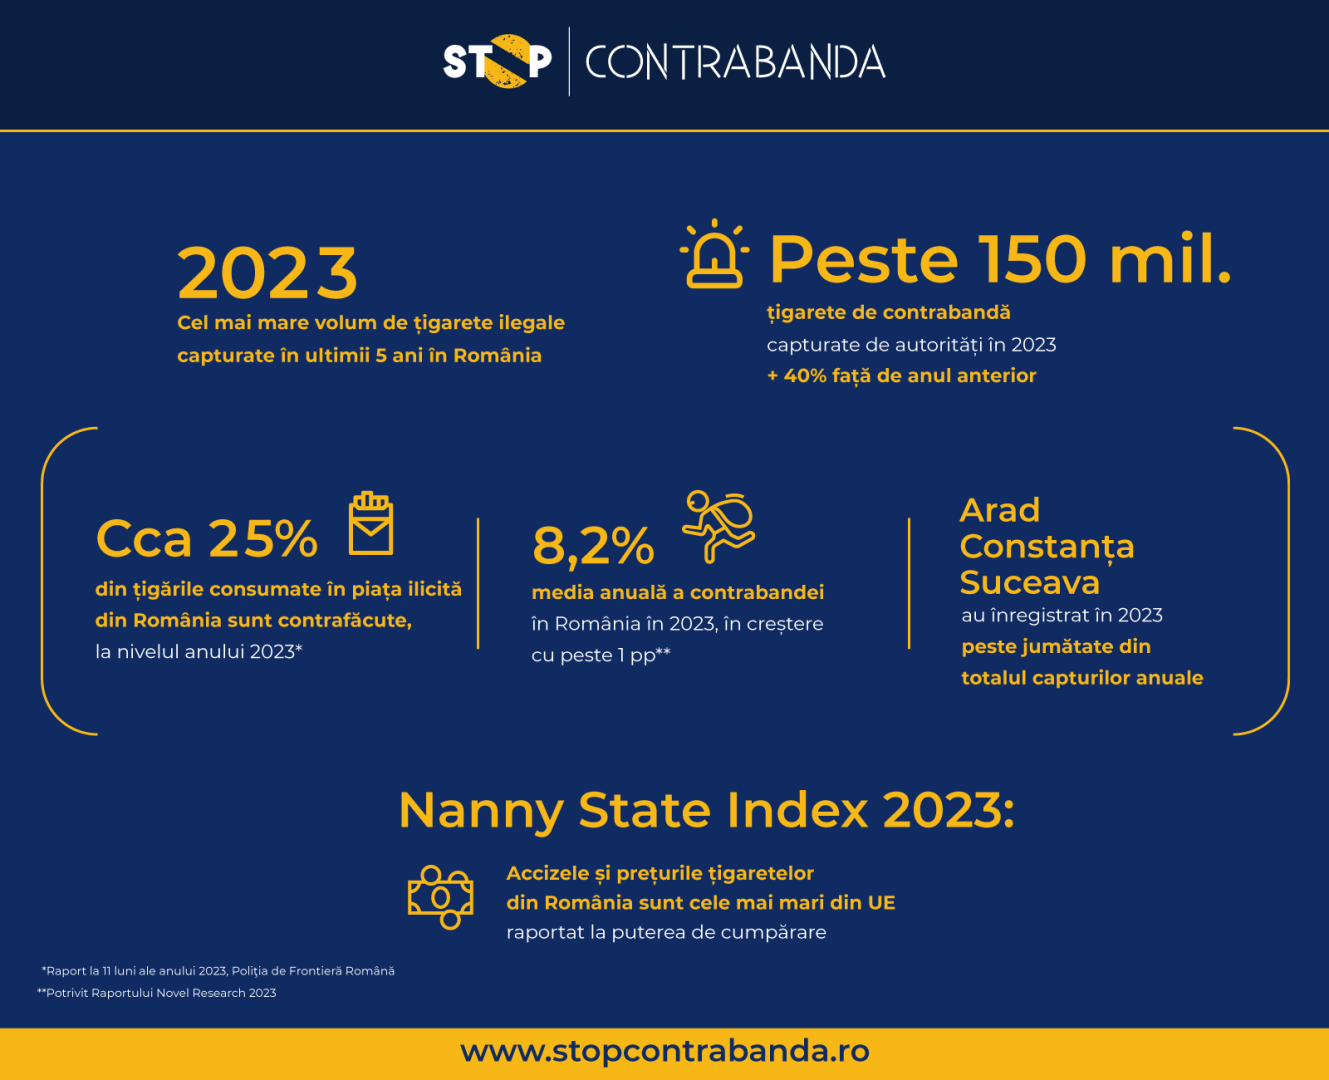 Stop Contrabanda: 2023 – cel mai mare volum de țigarete ilegale capturate în ultimii 5 ani în România